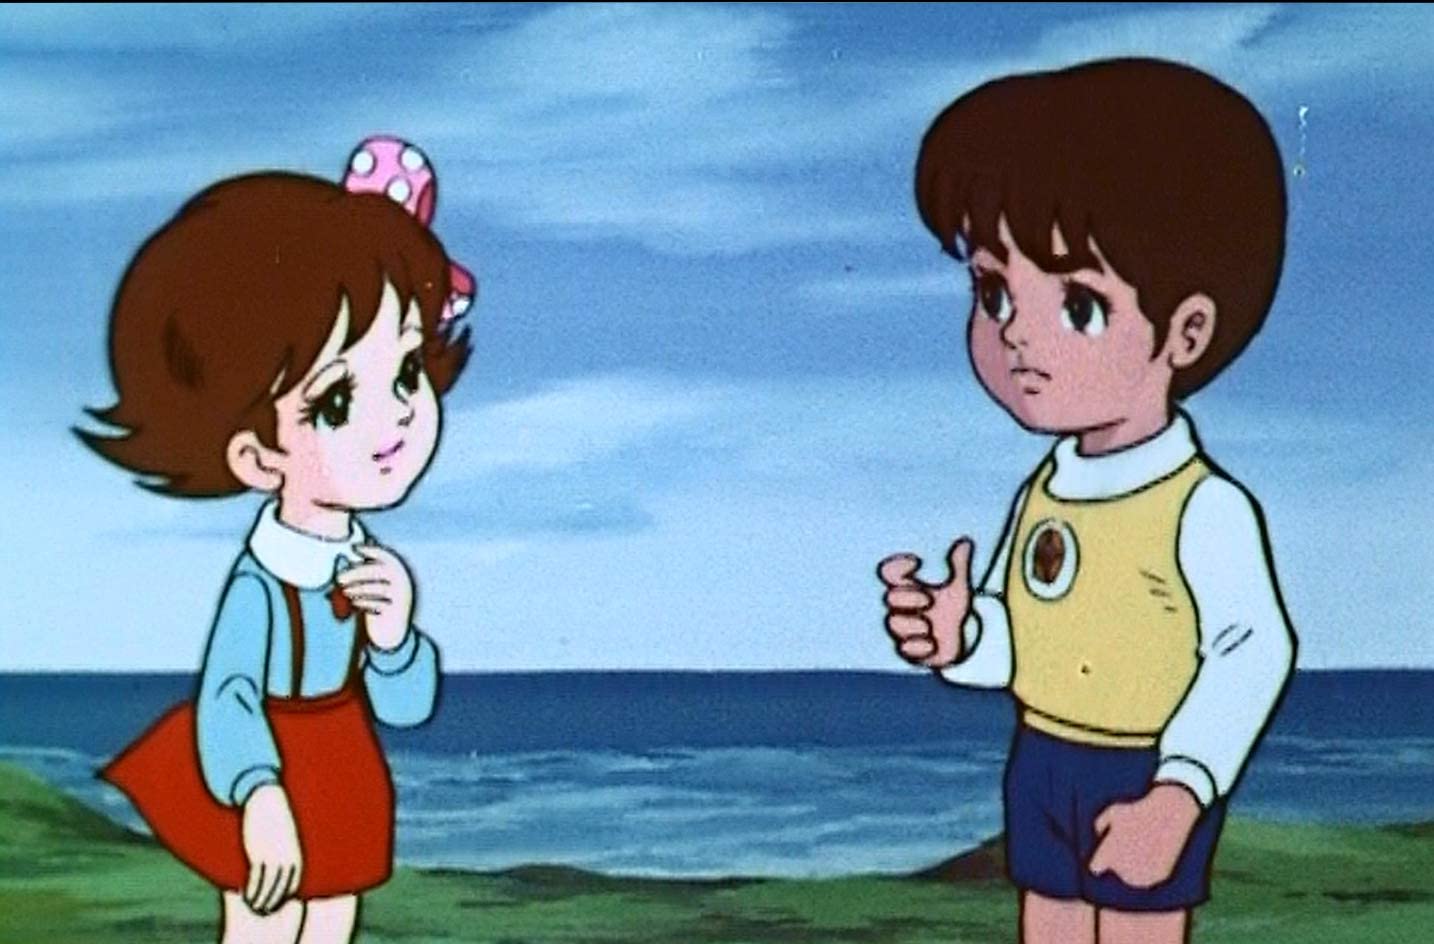 50年经典动画「铁甲飞天侠」复归 高清蓝光大碟12月23日出售